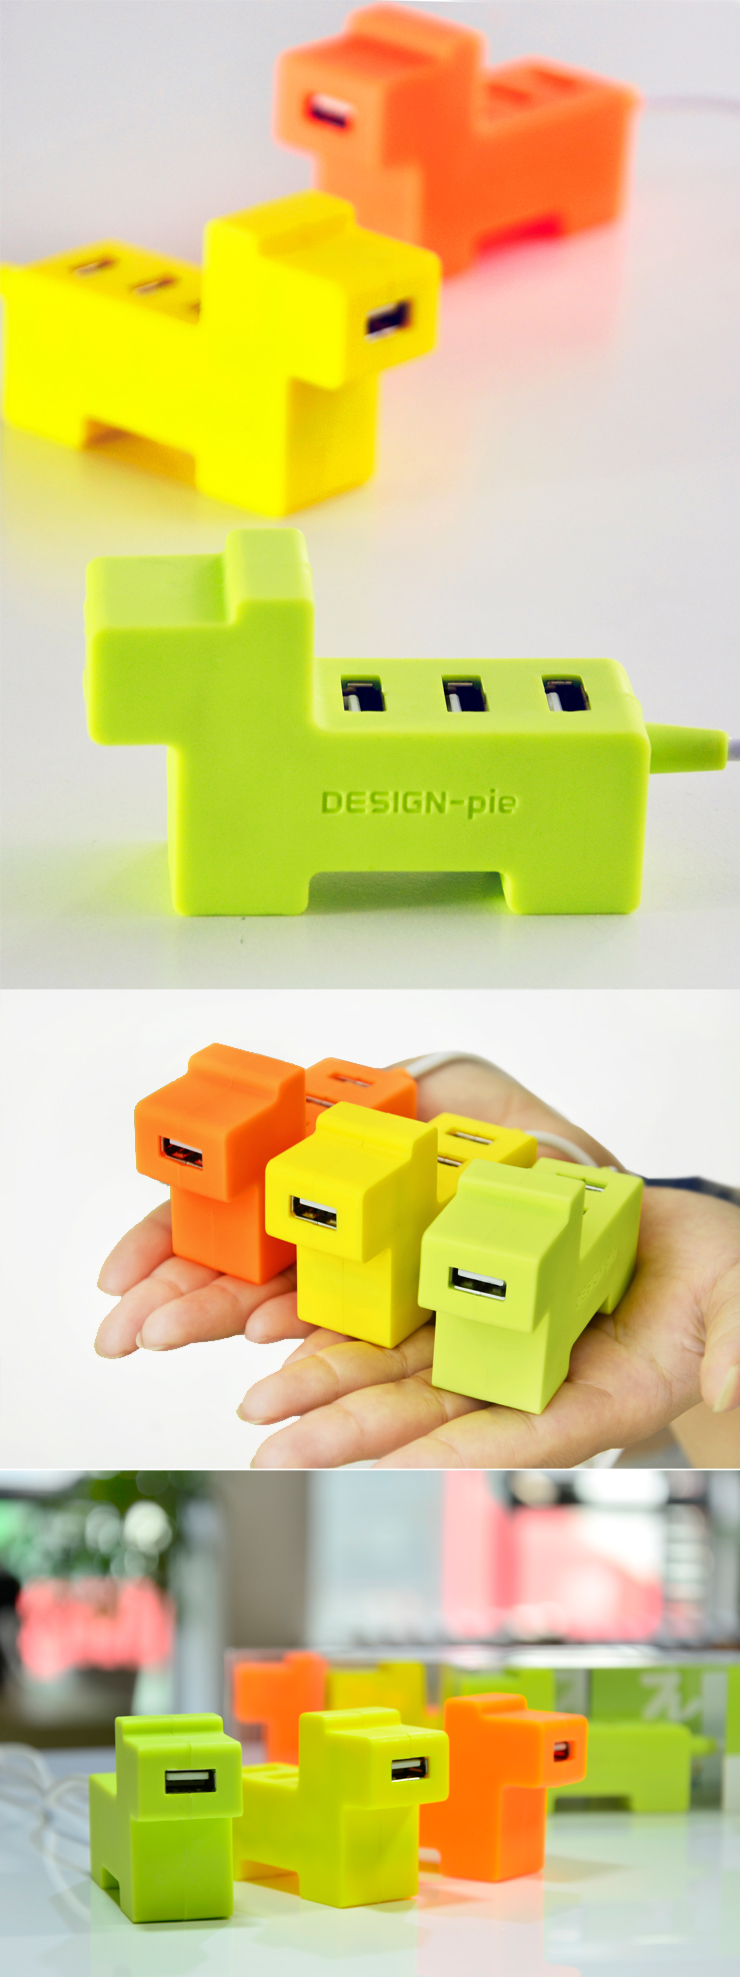 趣味造型 USB连接器